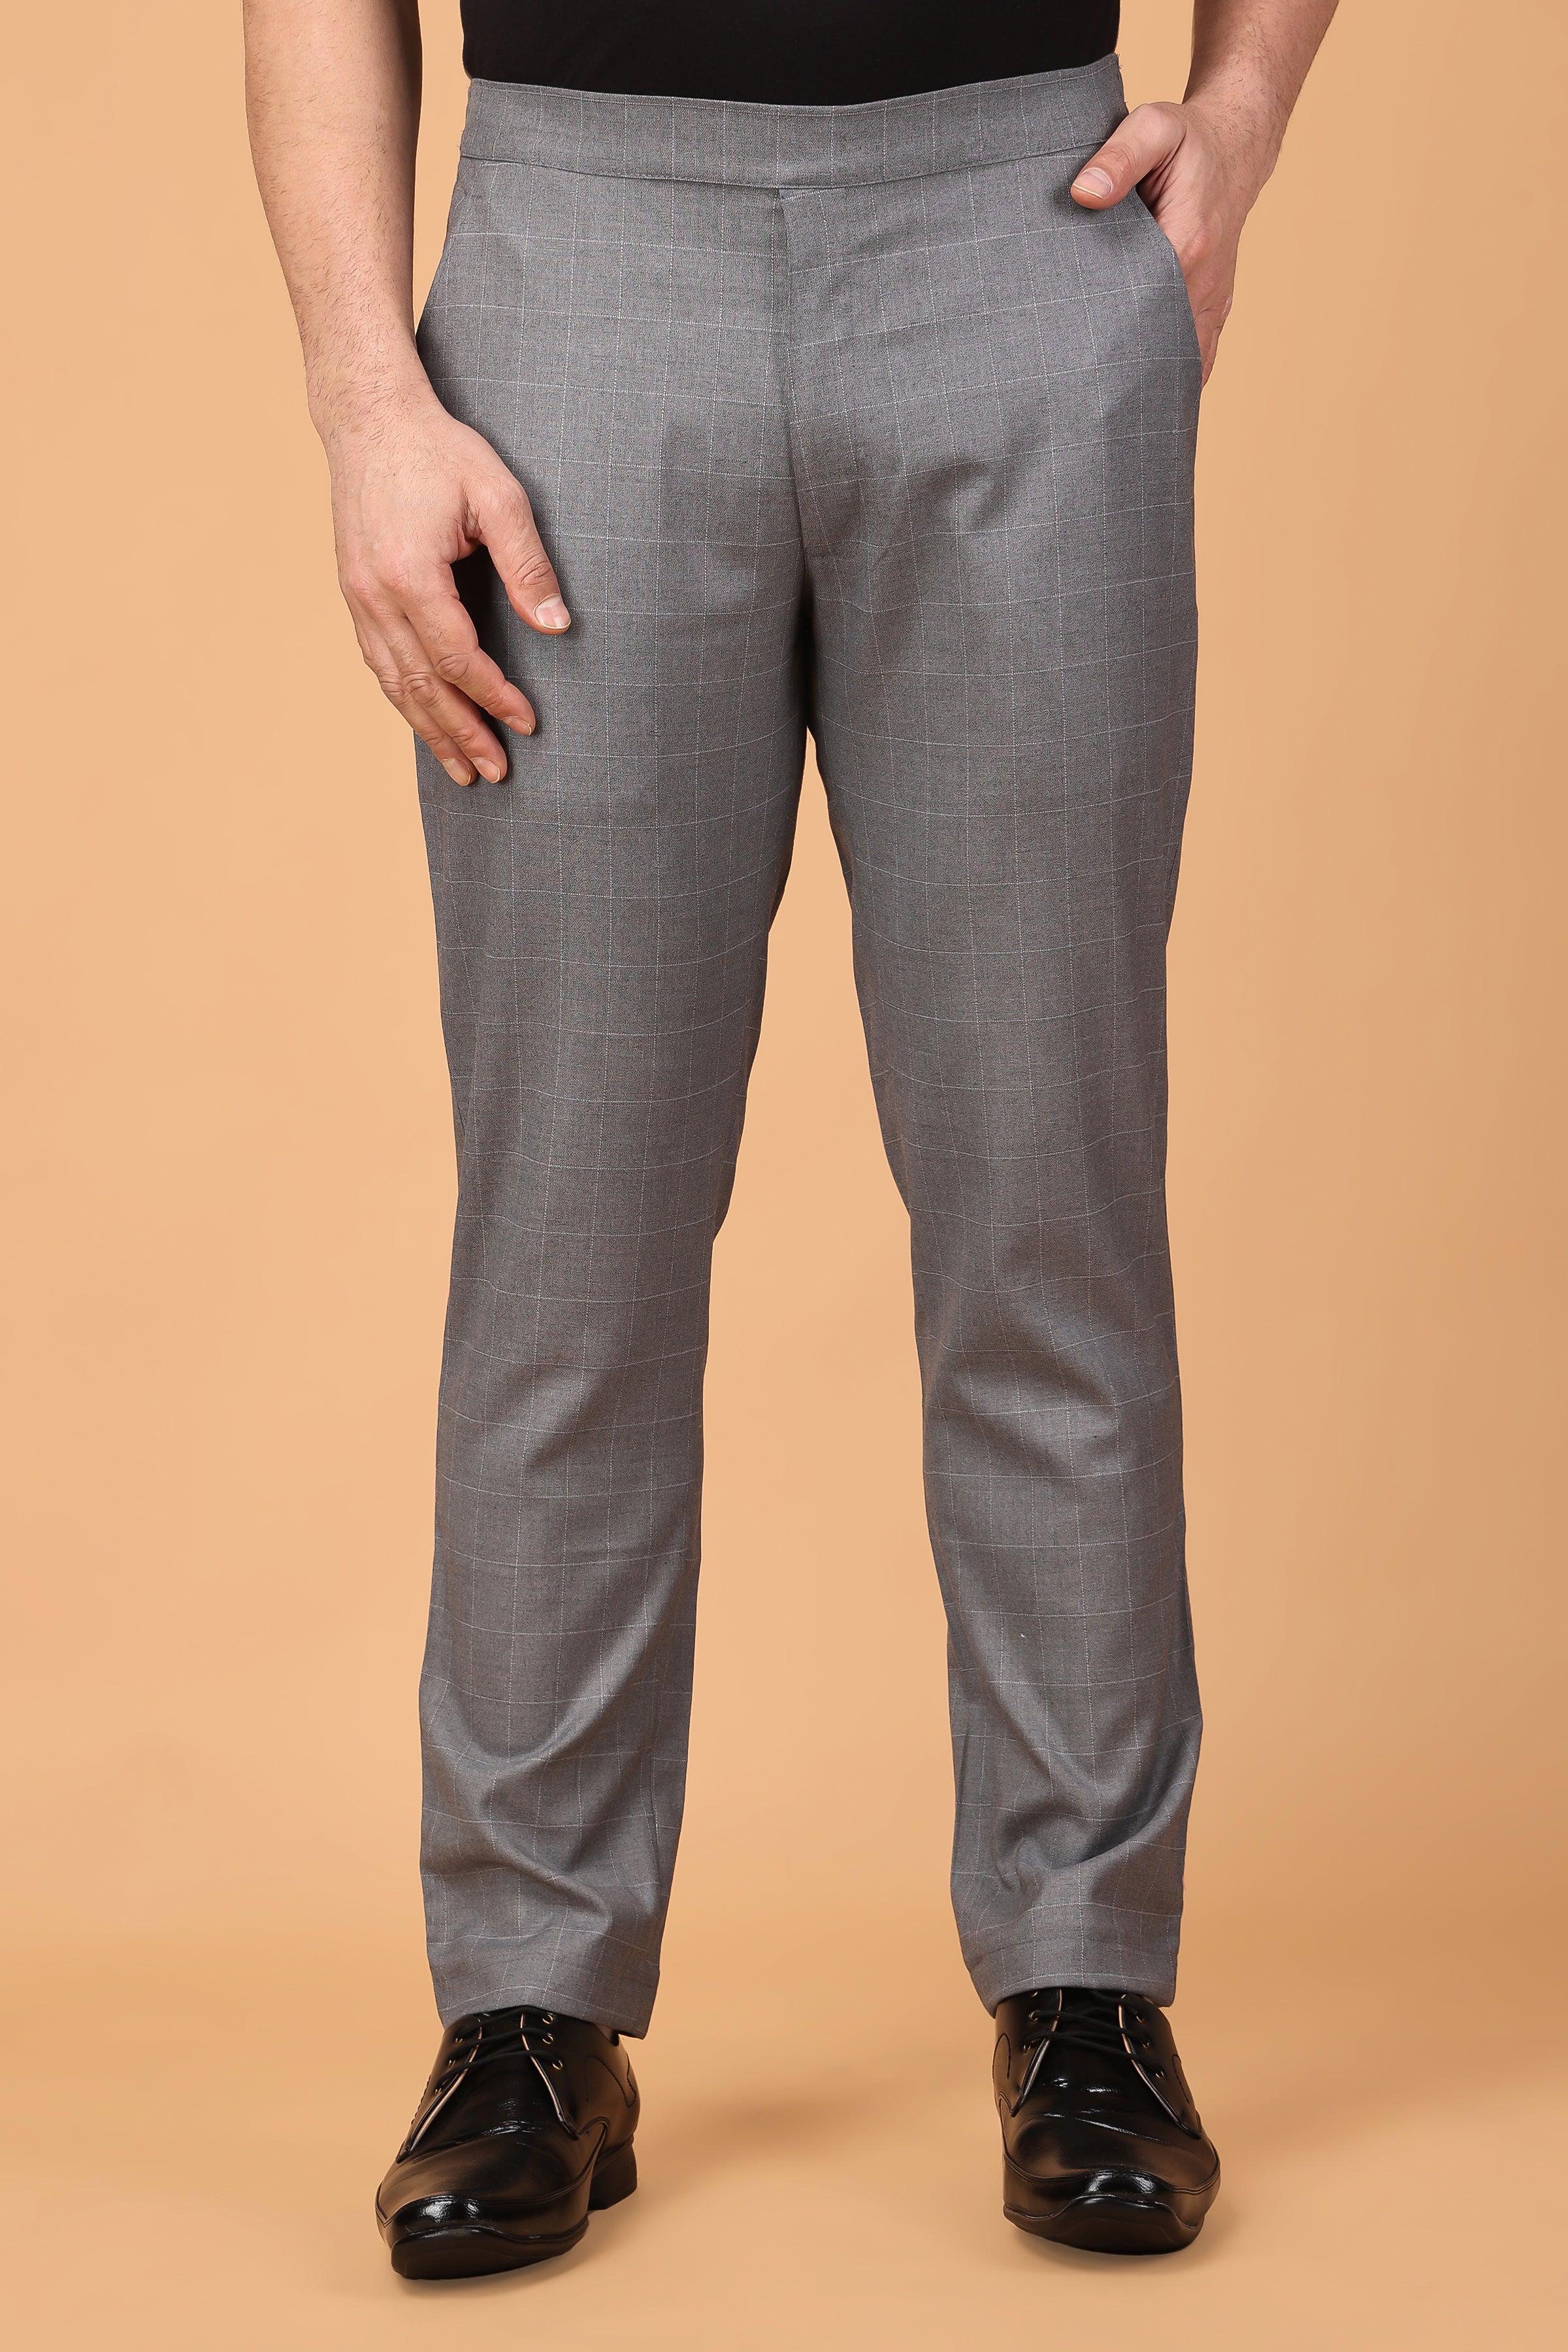 Buy Highlander Dark Beige Regular Fit Solid Plus Size Chinos for Men Online  at Rs.853 - Ketch